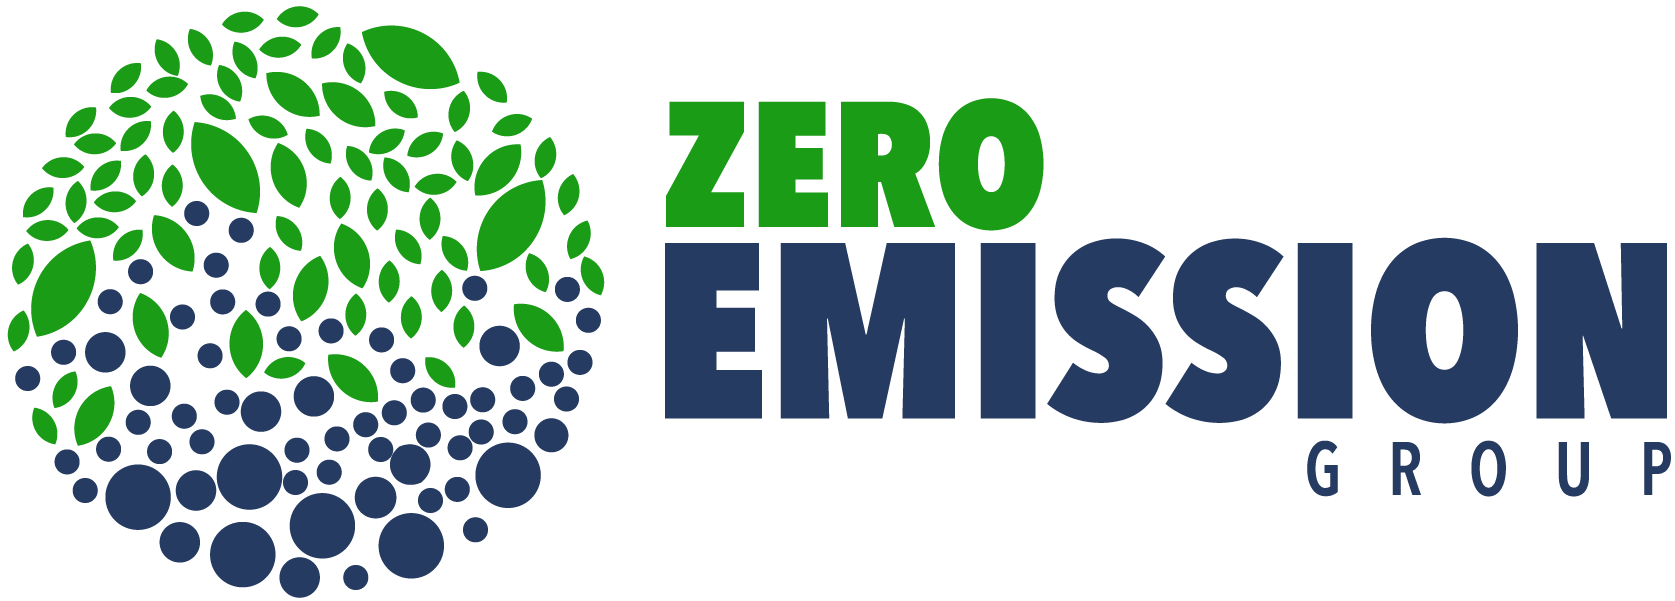 Logo Zero Emission Group (EPFL)